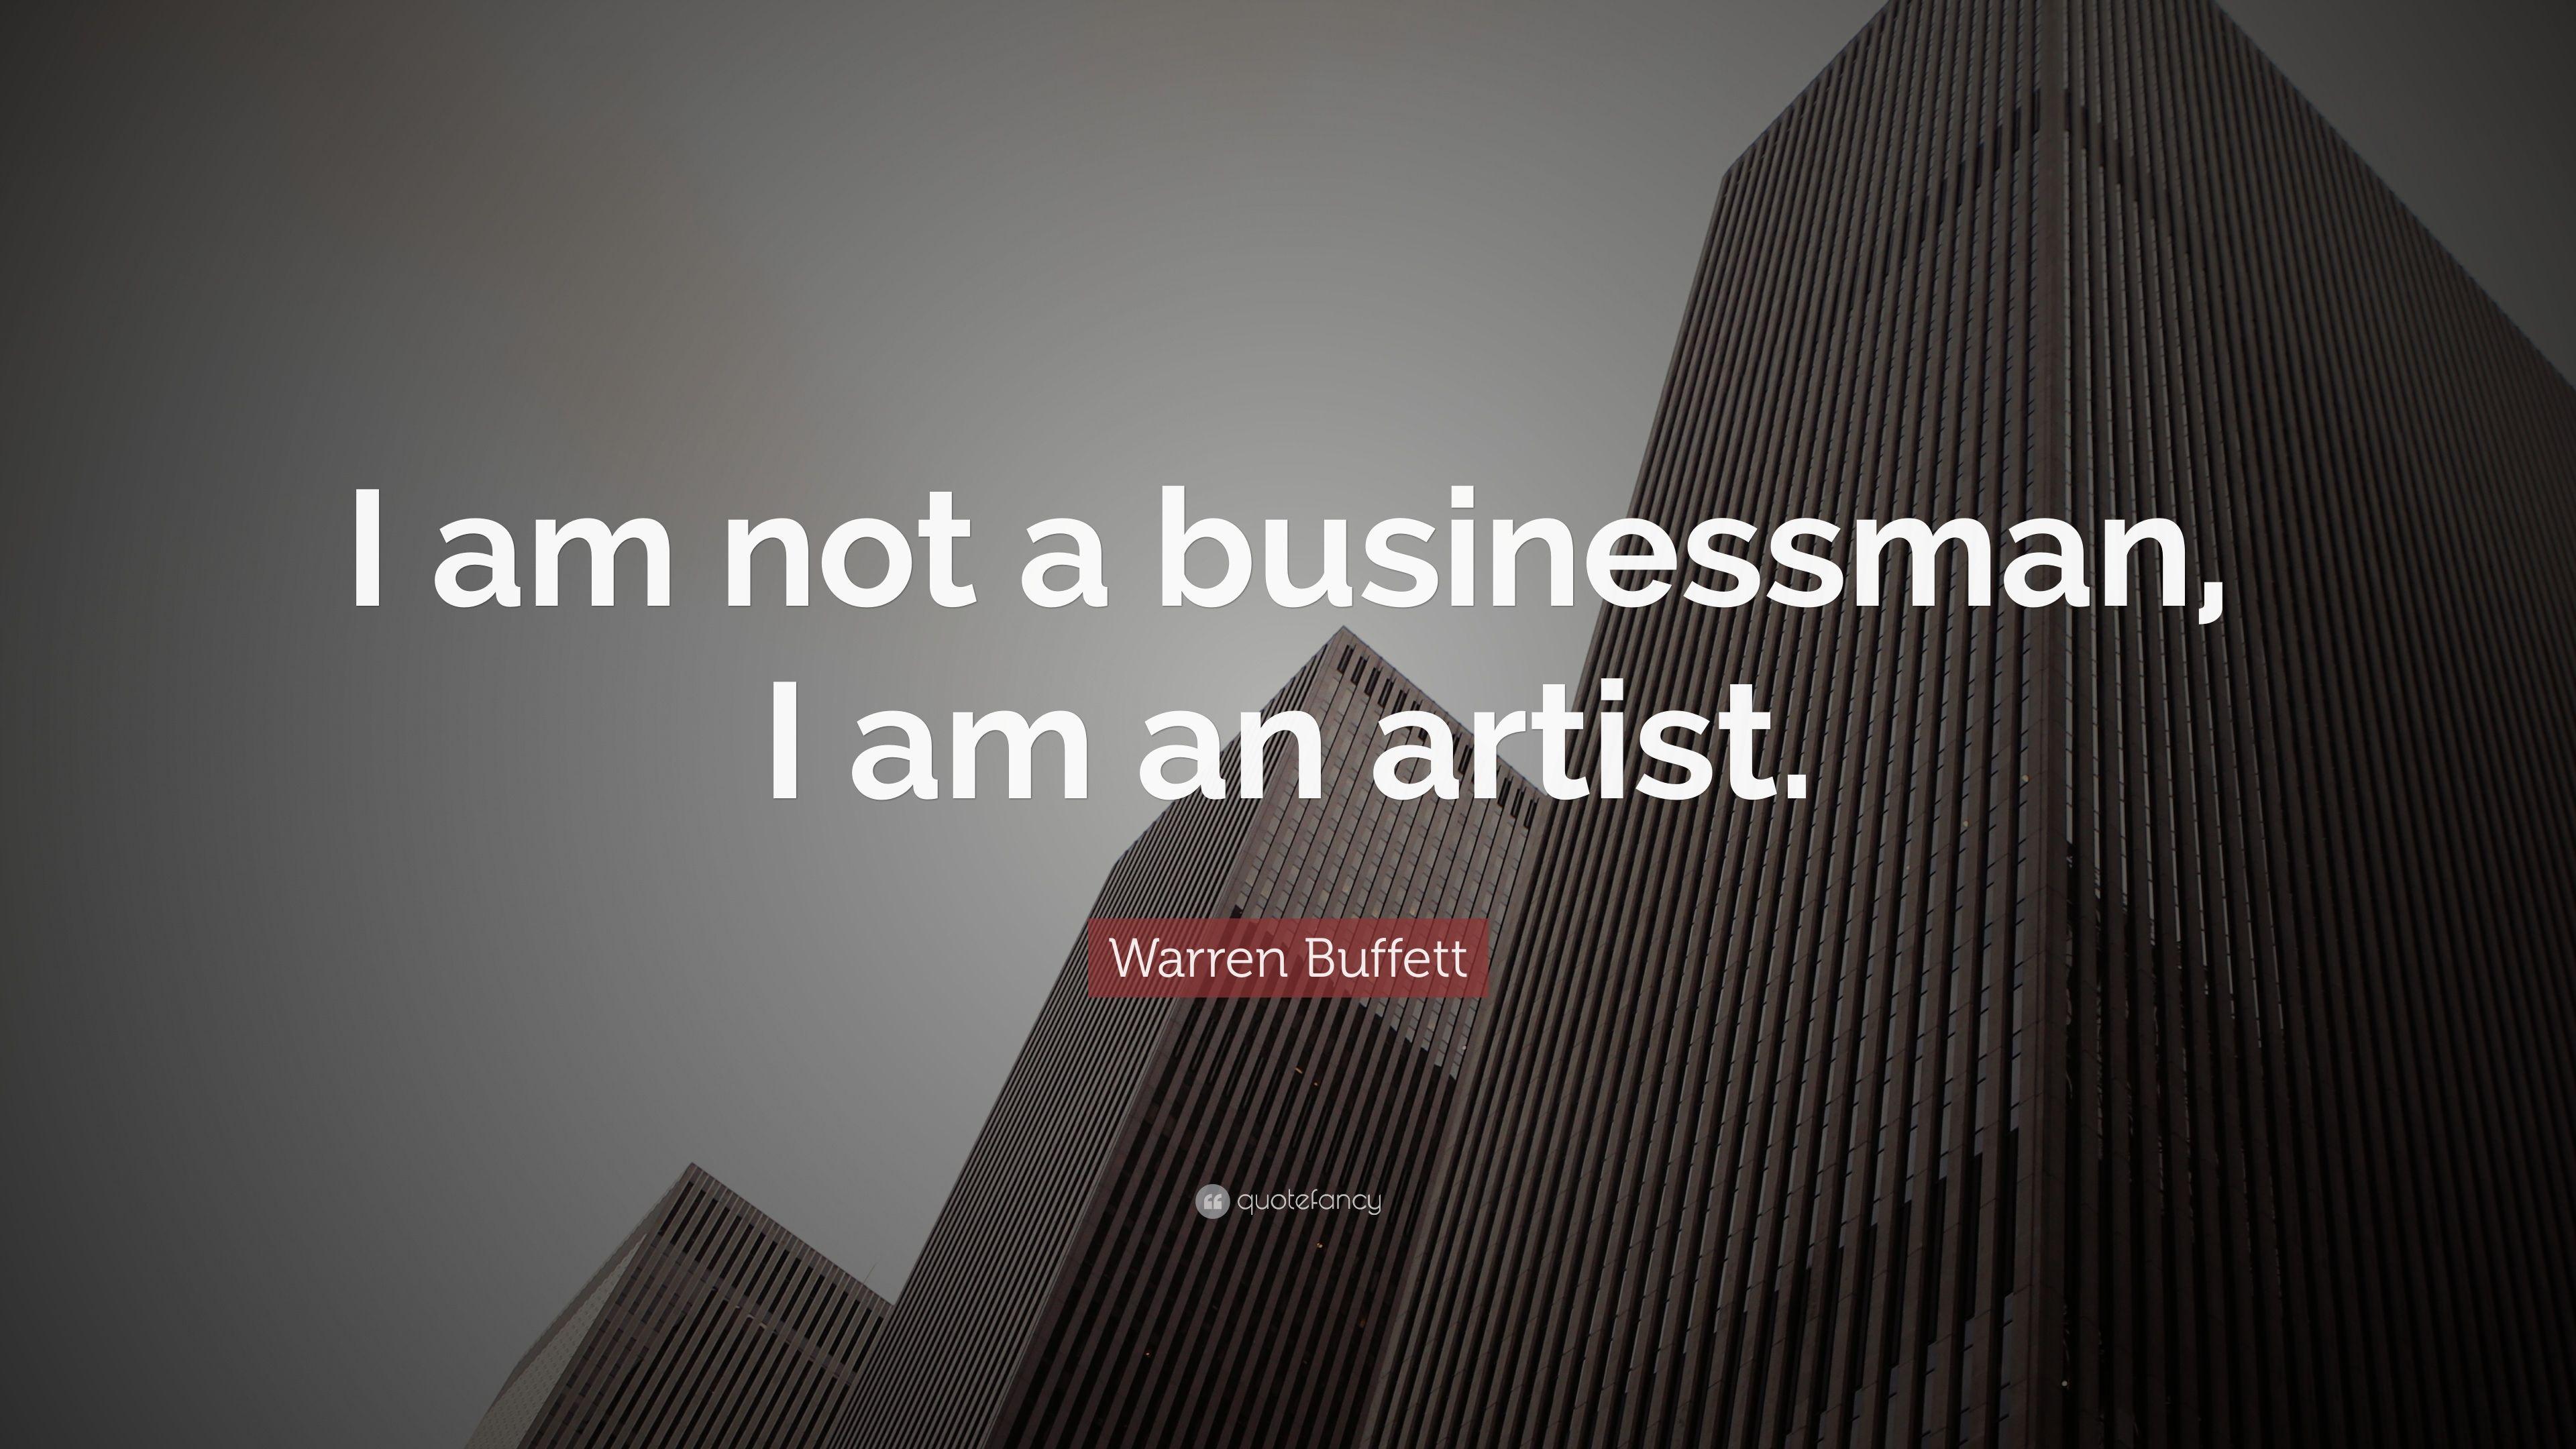 Warren Buffett Quote: “I am not a businessman, I am an artist